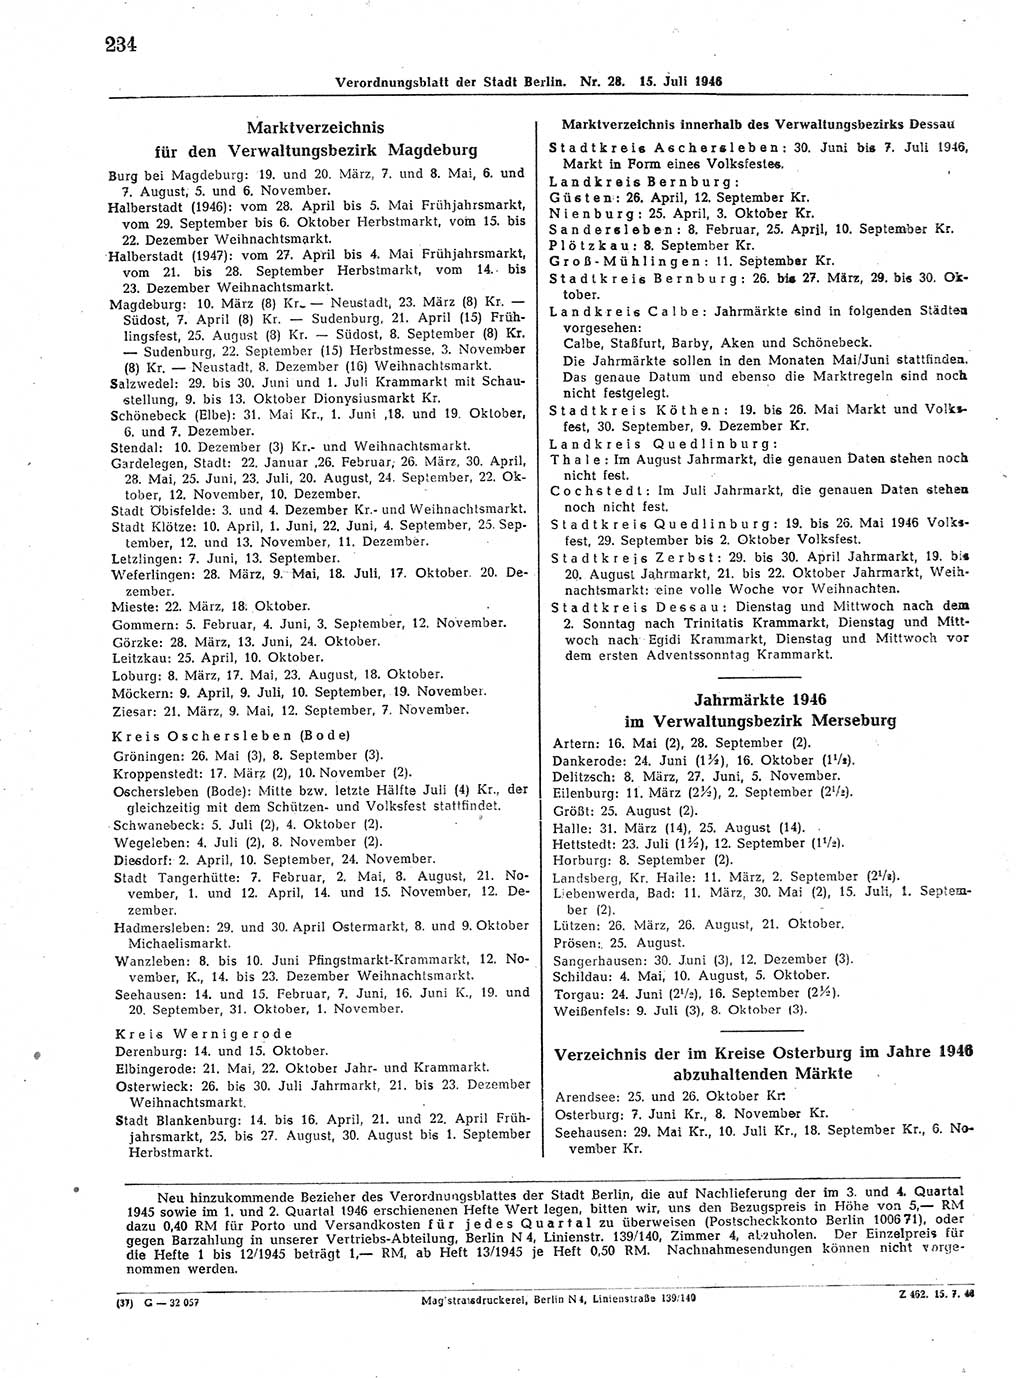 Verordnungsblatt (VOBl.) der Stadt Berlin, für Groß-Berlin 1946, Seite 234 (VOBl. Bln. 1946, S. 234)